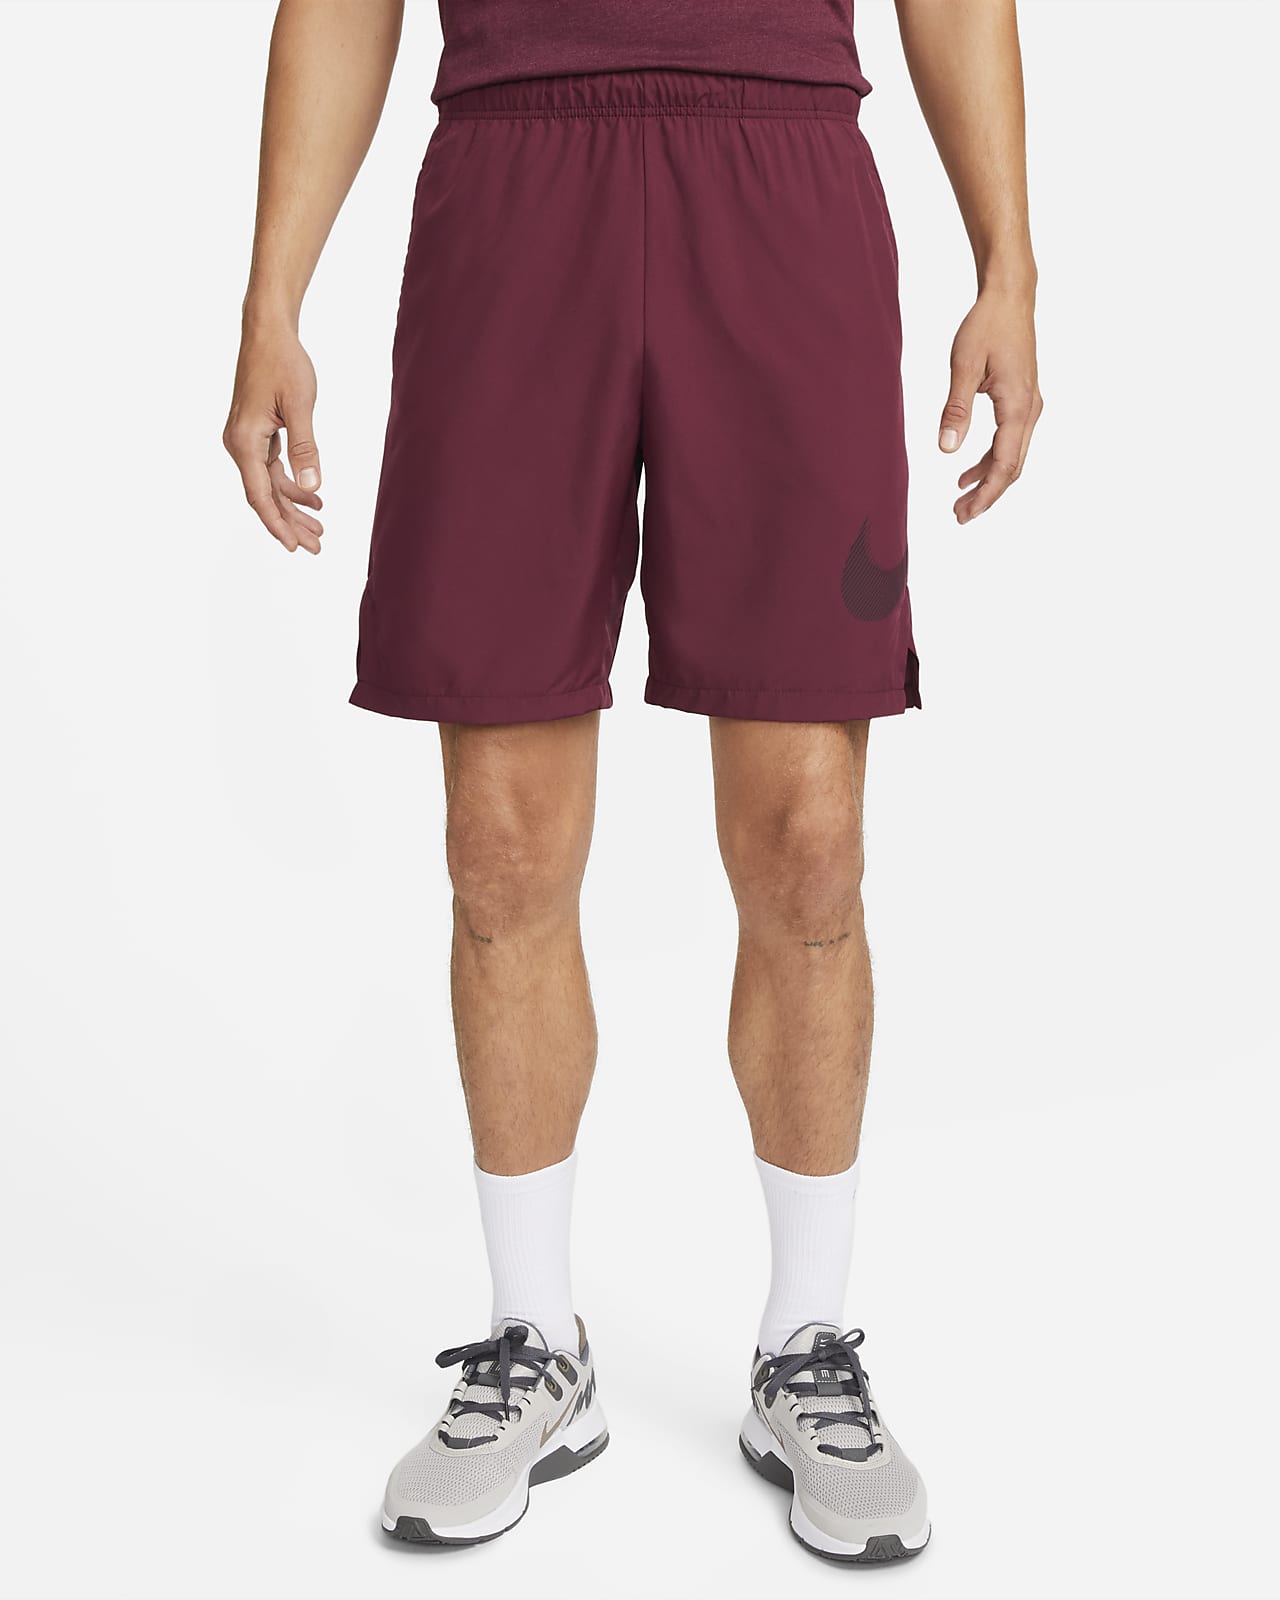 Nike Dri-FIT 男款 9" 梭織圖樣健身短褲